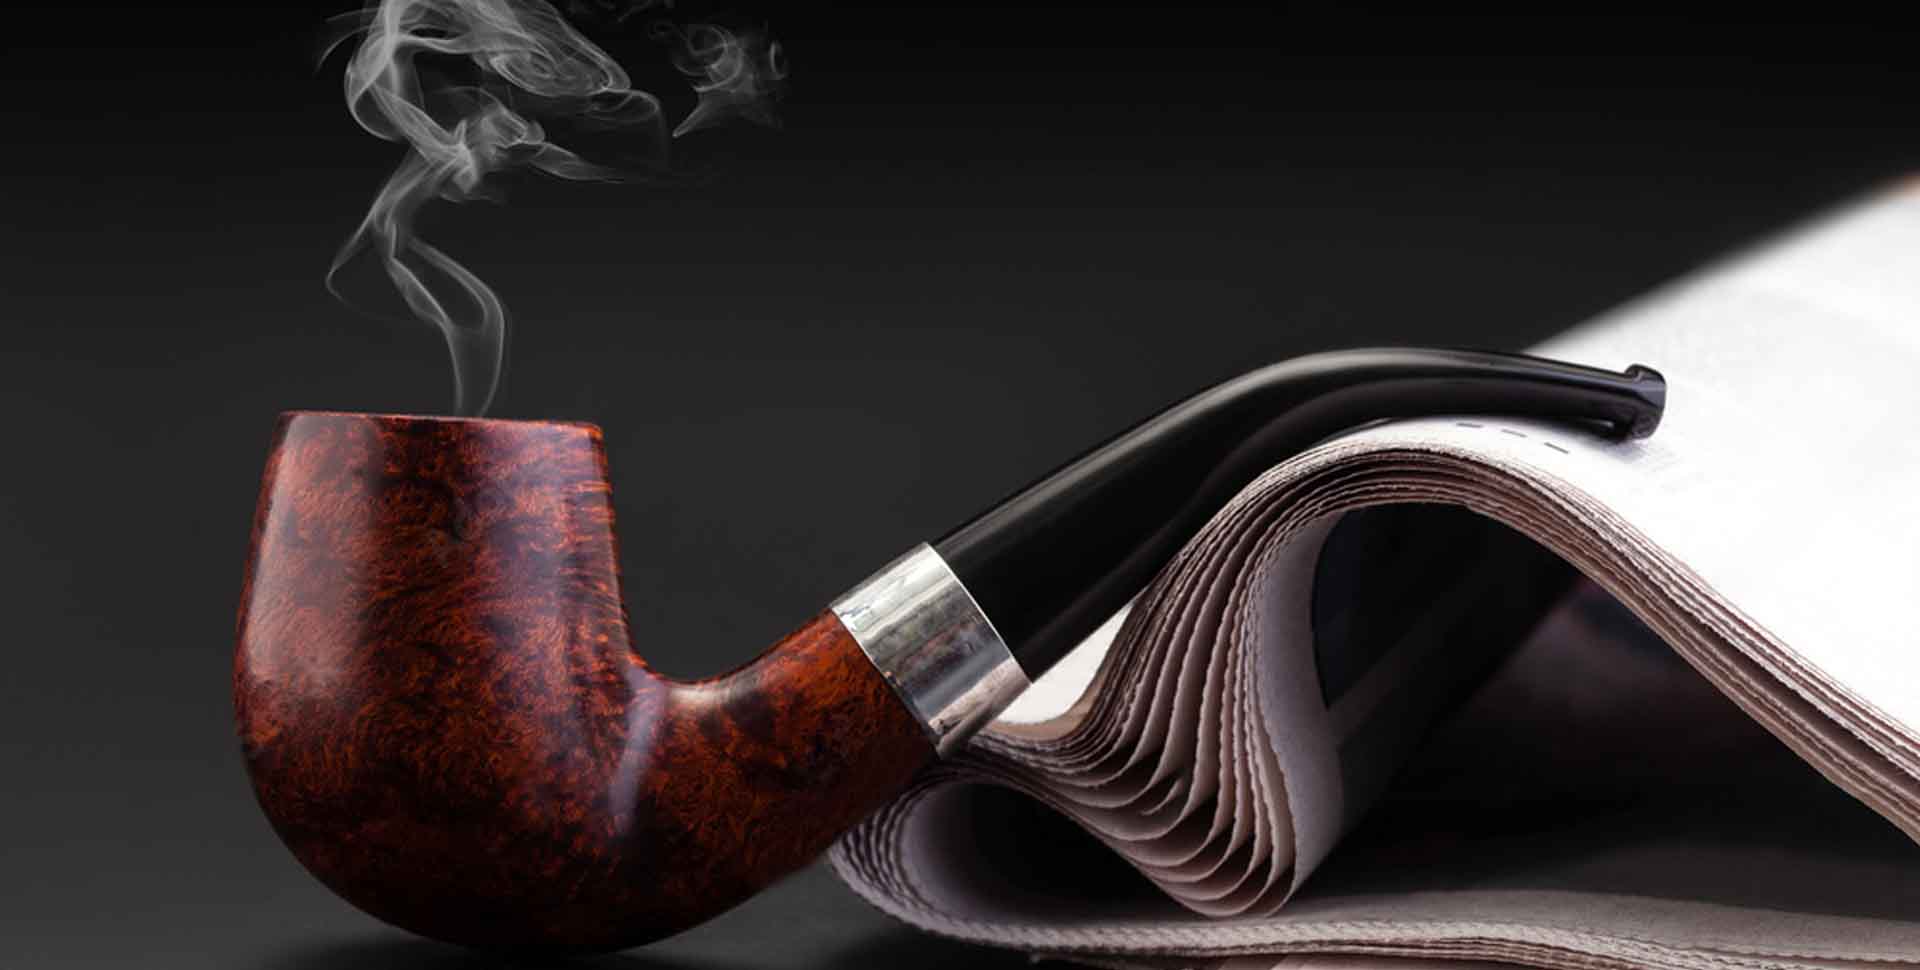 Briarová fajka na tabak, z ktorej sa dymí, položená na zrolovaných novinách